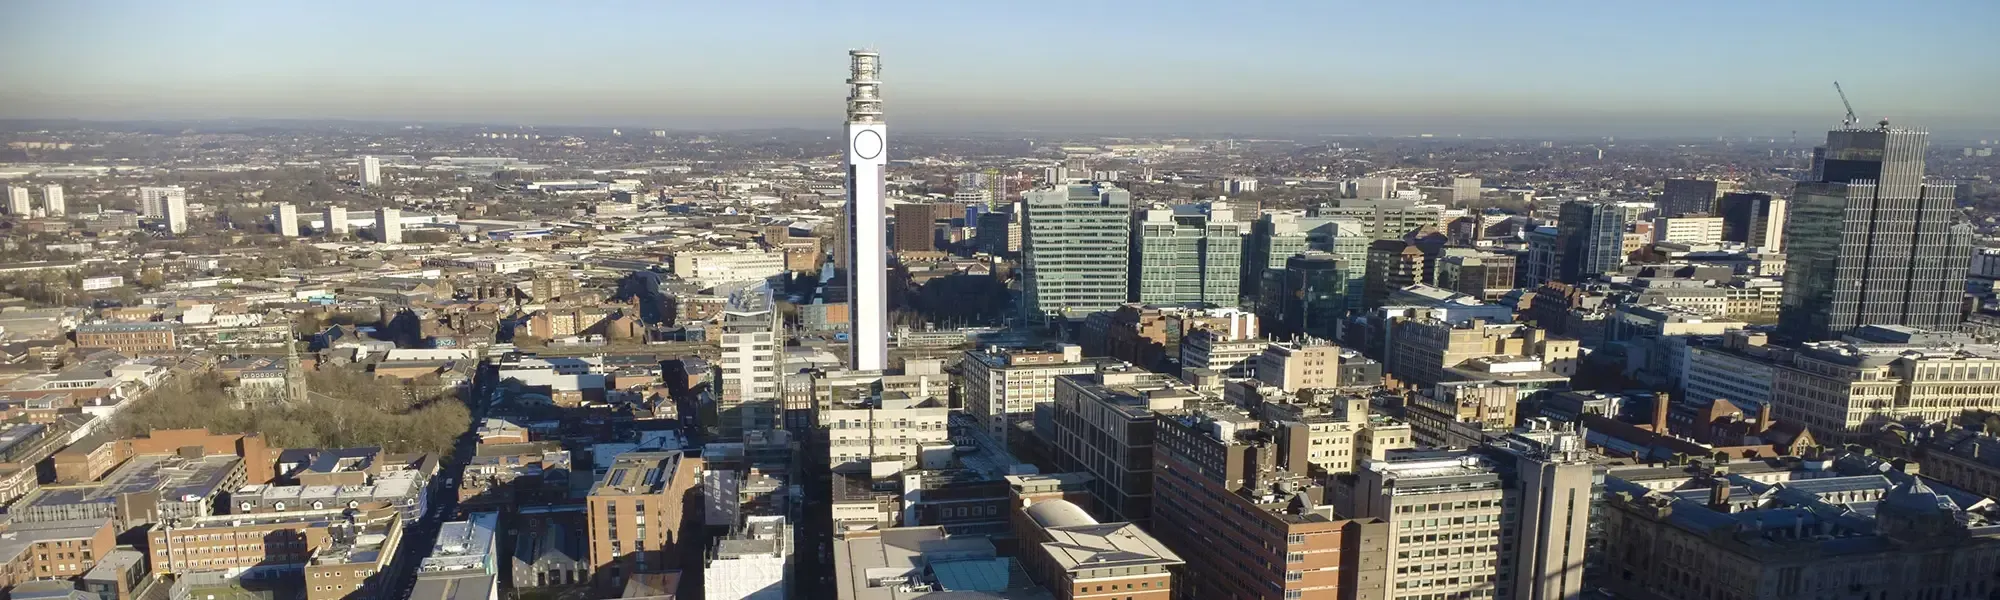 Birmingham Aerial View